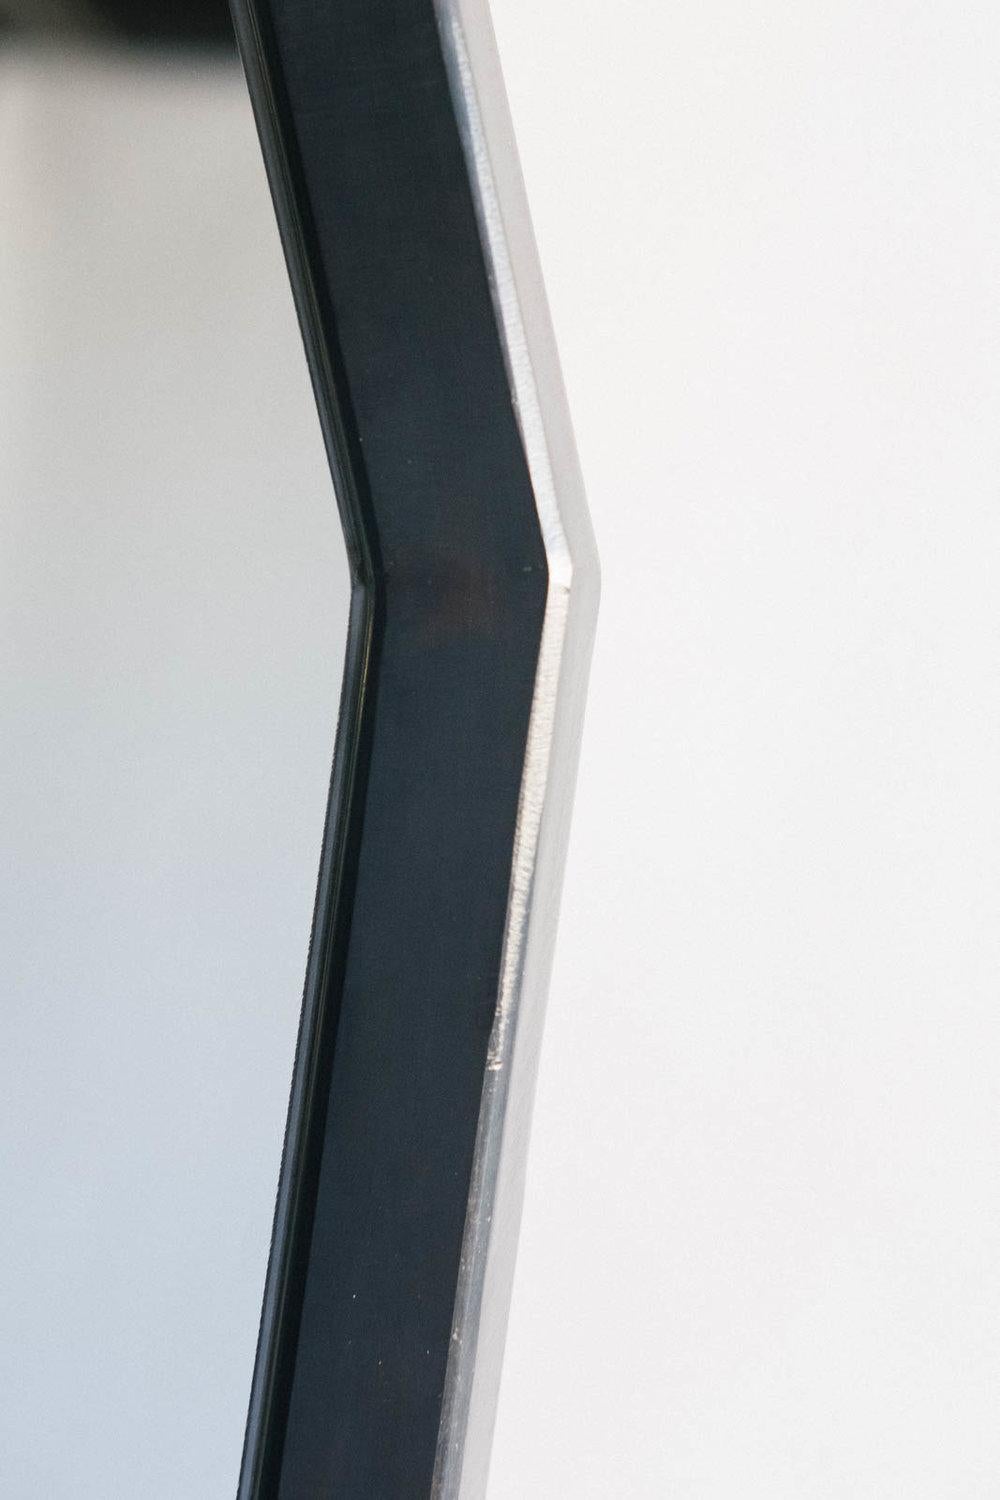 Der Otomo-Bodenspiegel ist ein modernes Design, das Schlichtheit und Bewegung in ein normalerweise großes und statisches Schlafzimmer bringt. Minimalistisch im Design, aber als geometrische, fast futuristische Positionierung einer Kontrapostfigur